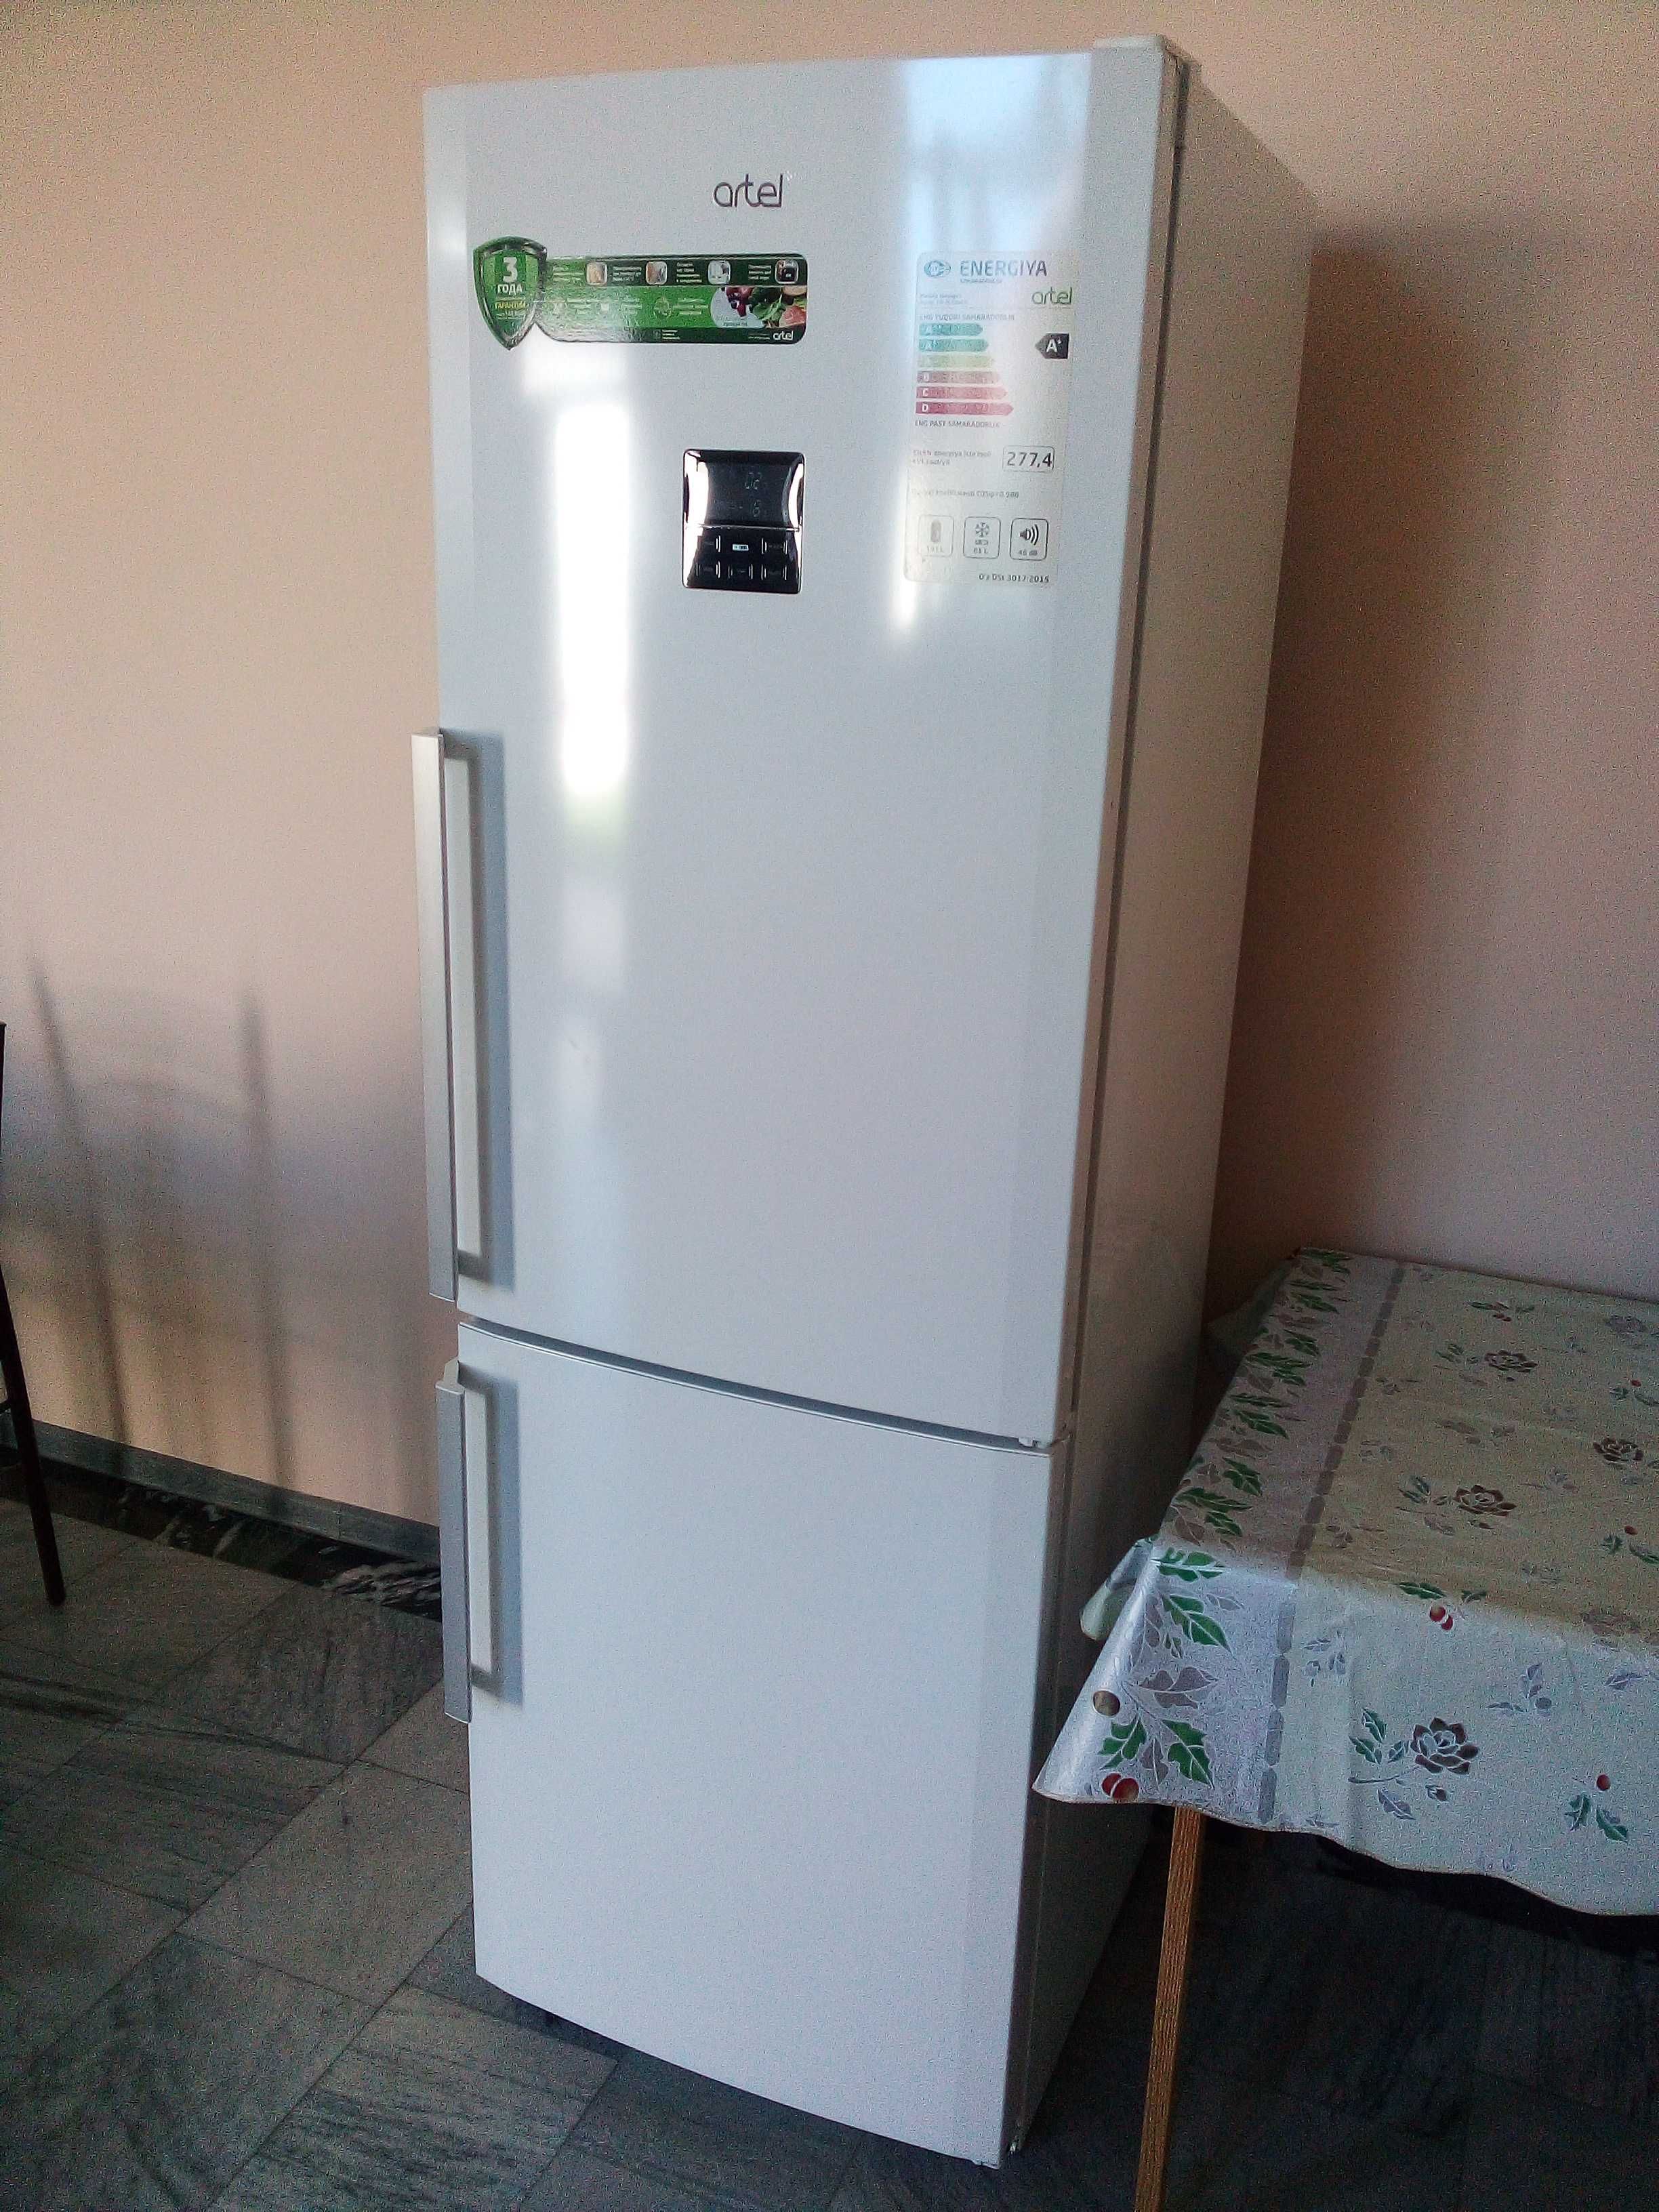 Большой холодильник Artel сенсорный, работает при низком напряжении